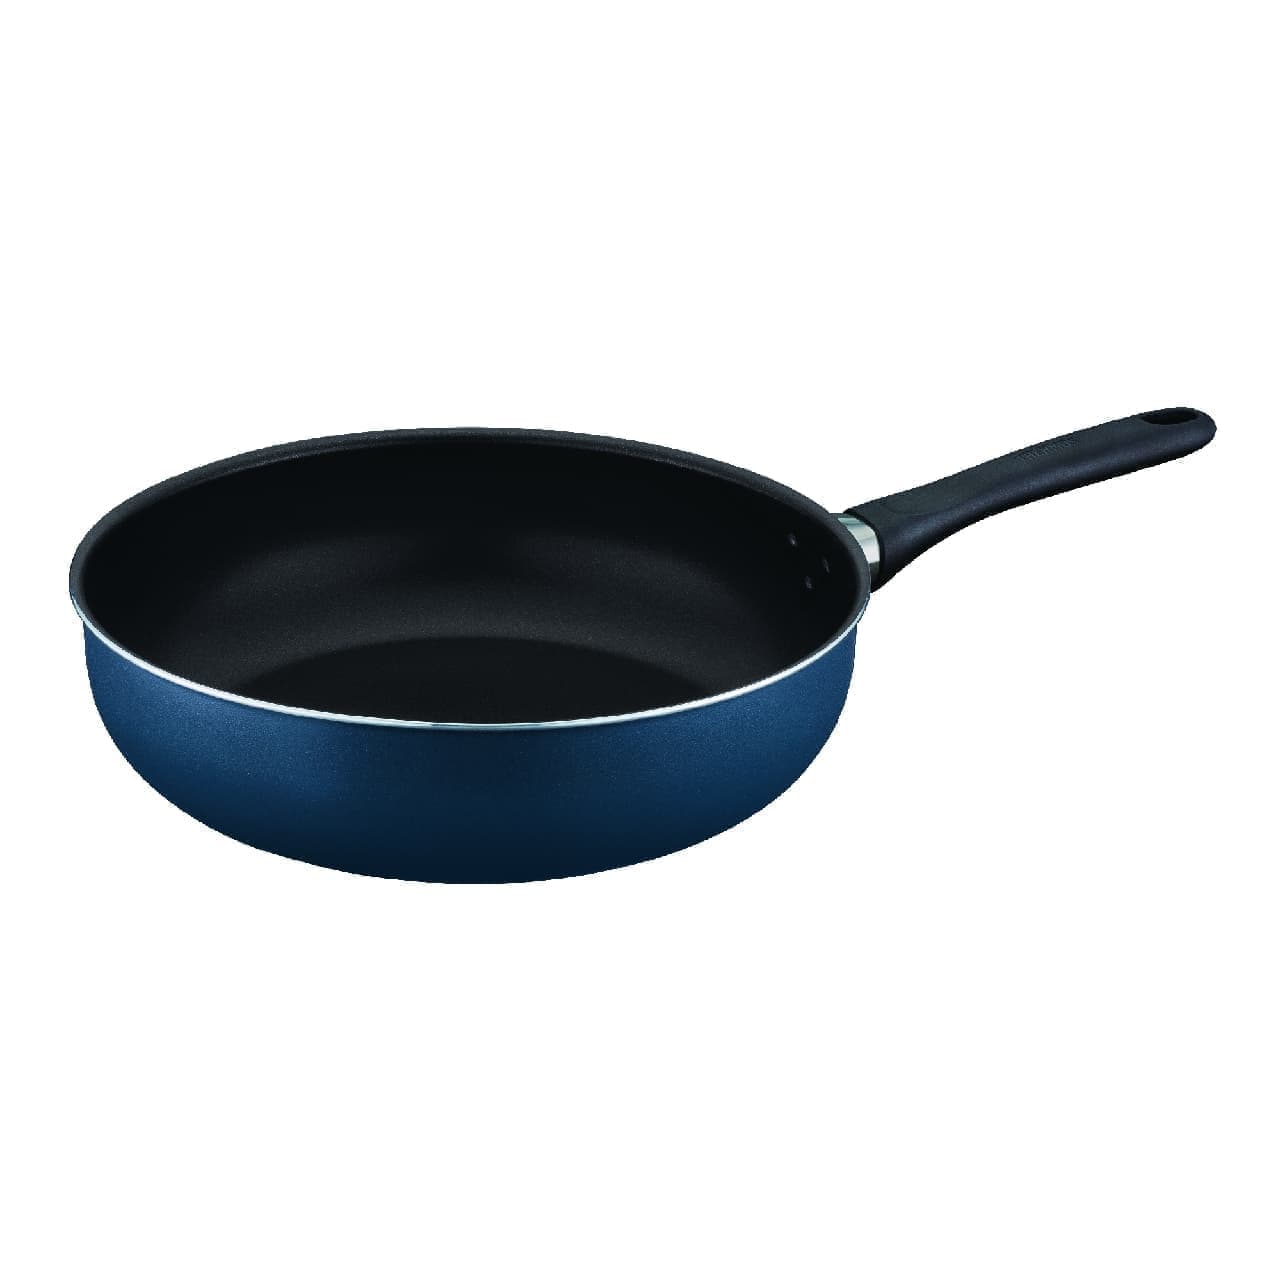 Thermos stir-fry pan